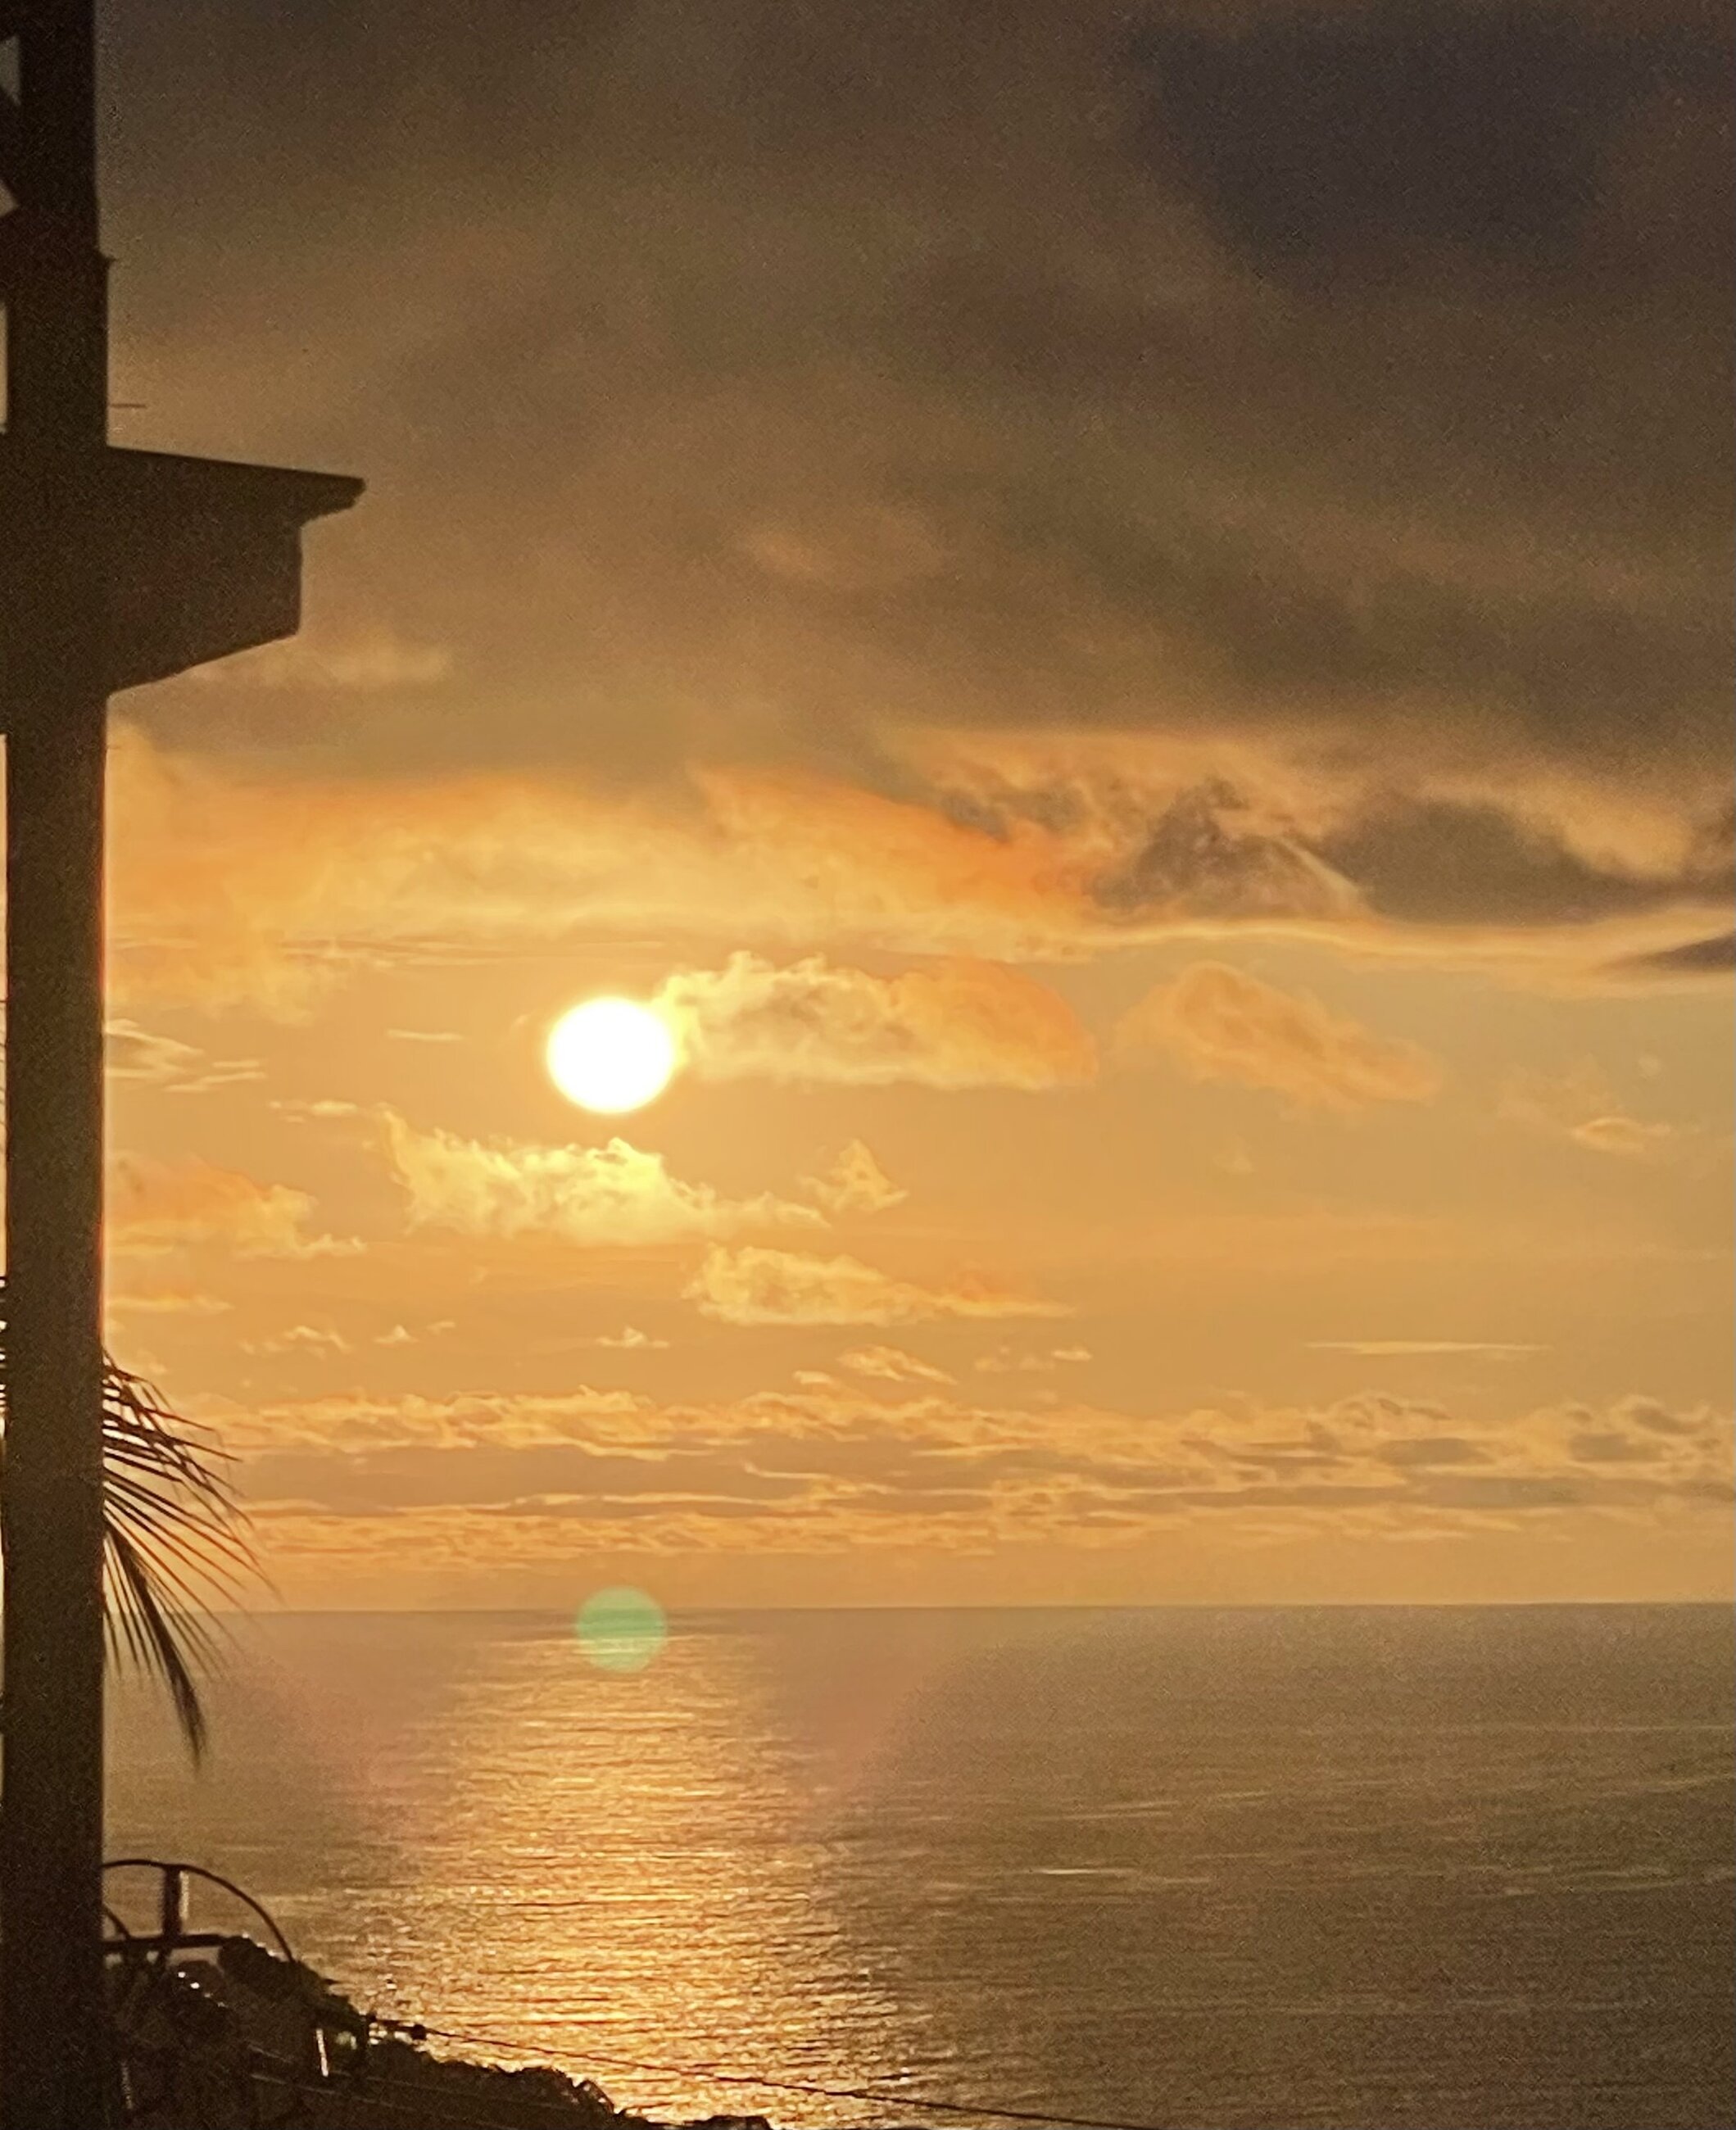 Spectacular sunset views @ Manuel Antonio, Costa Rica